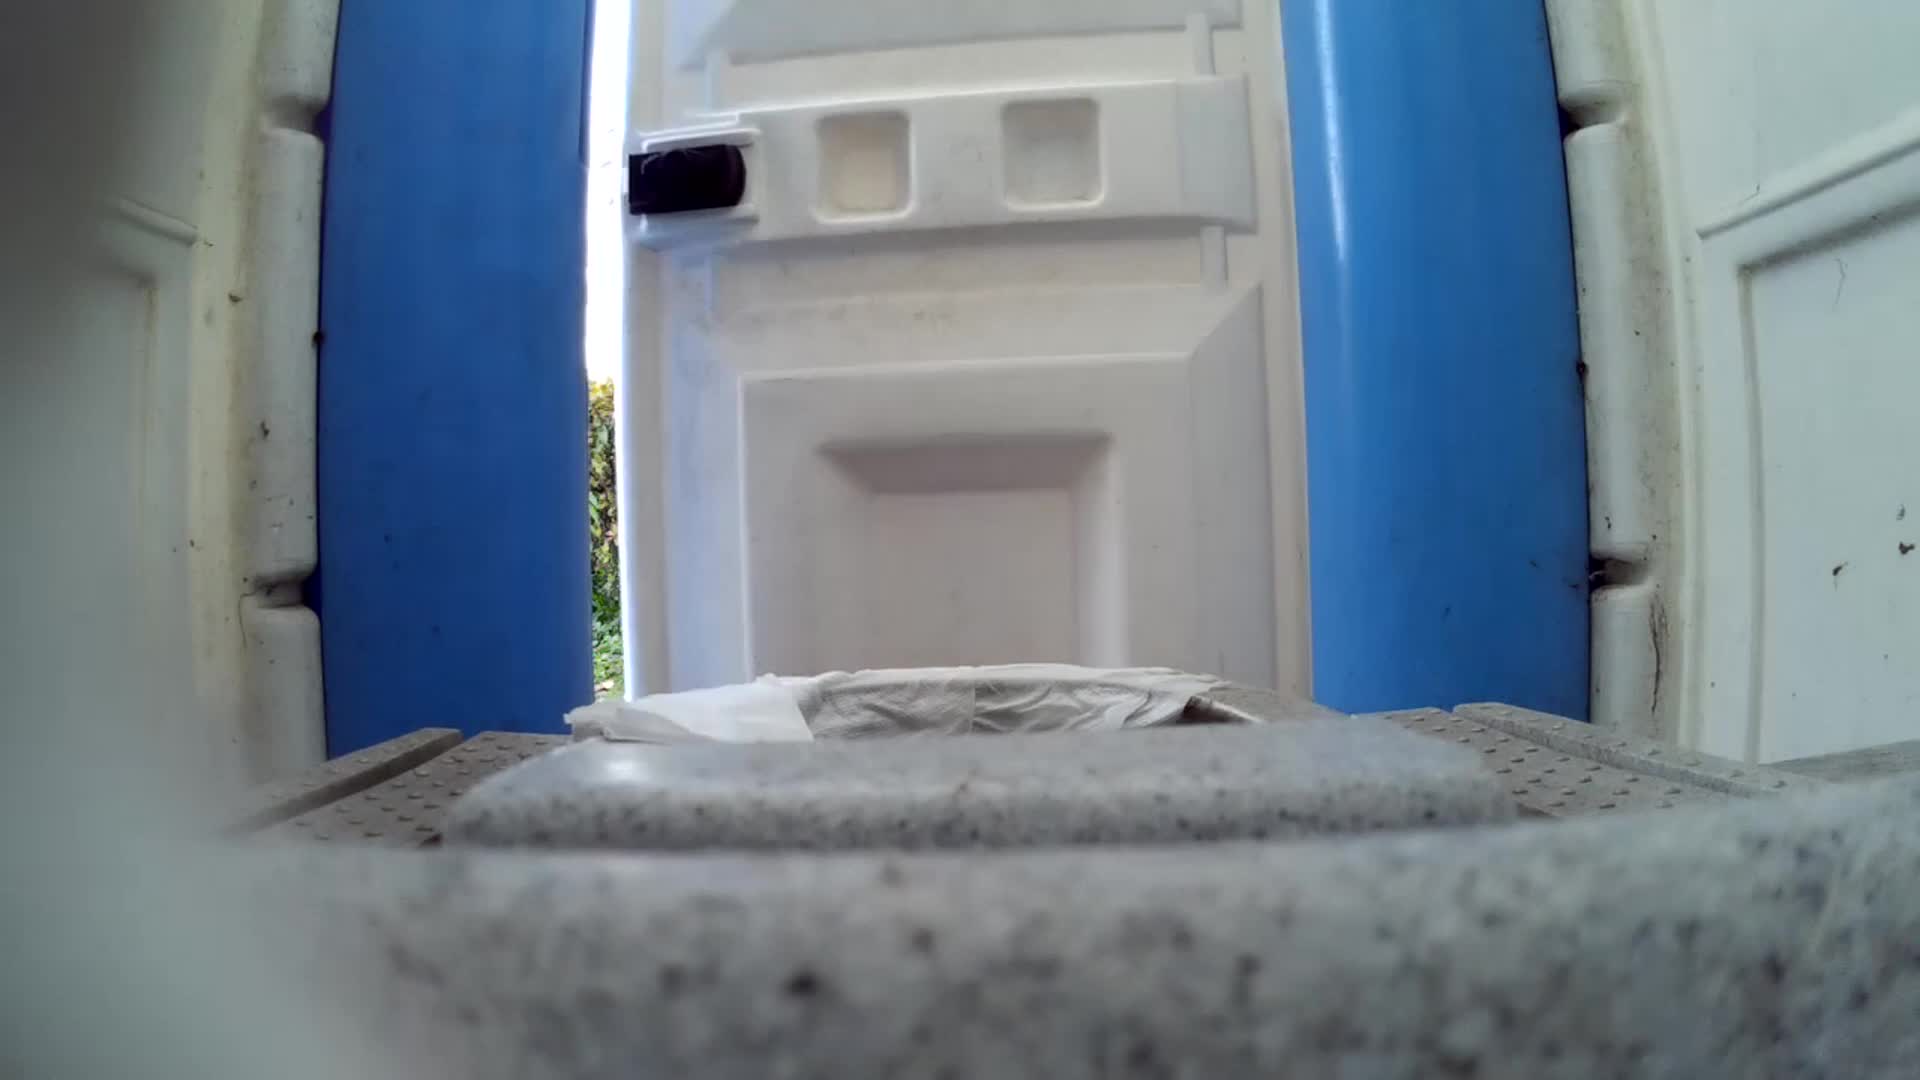 Hidden cam in toilet